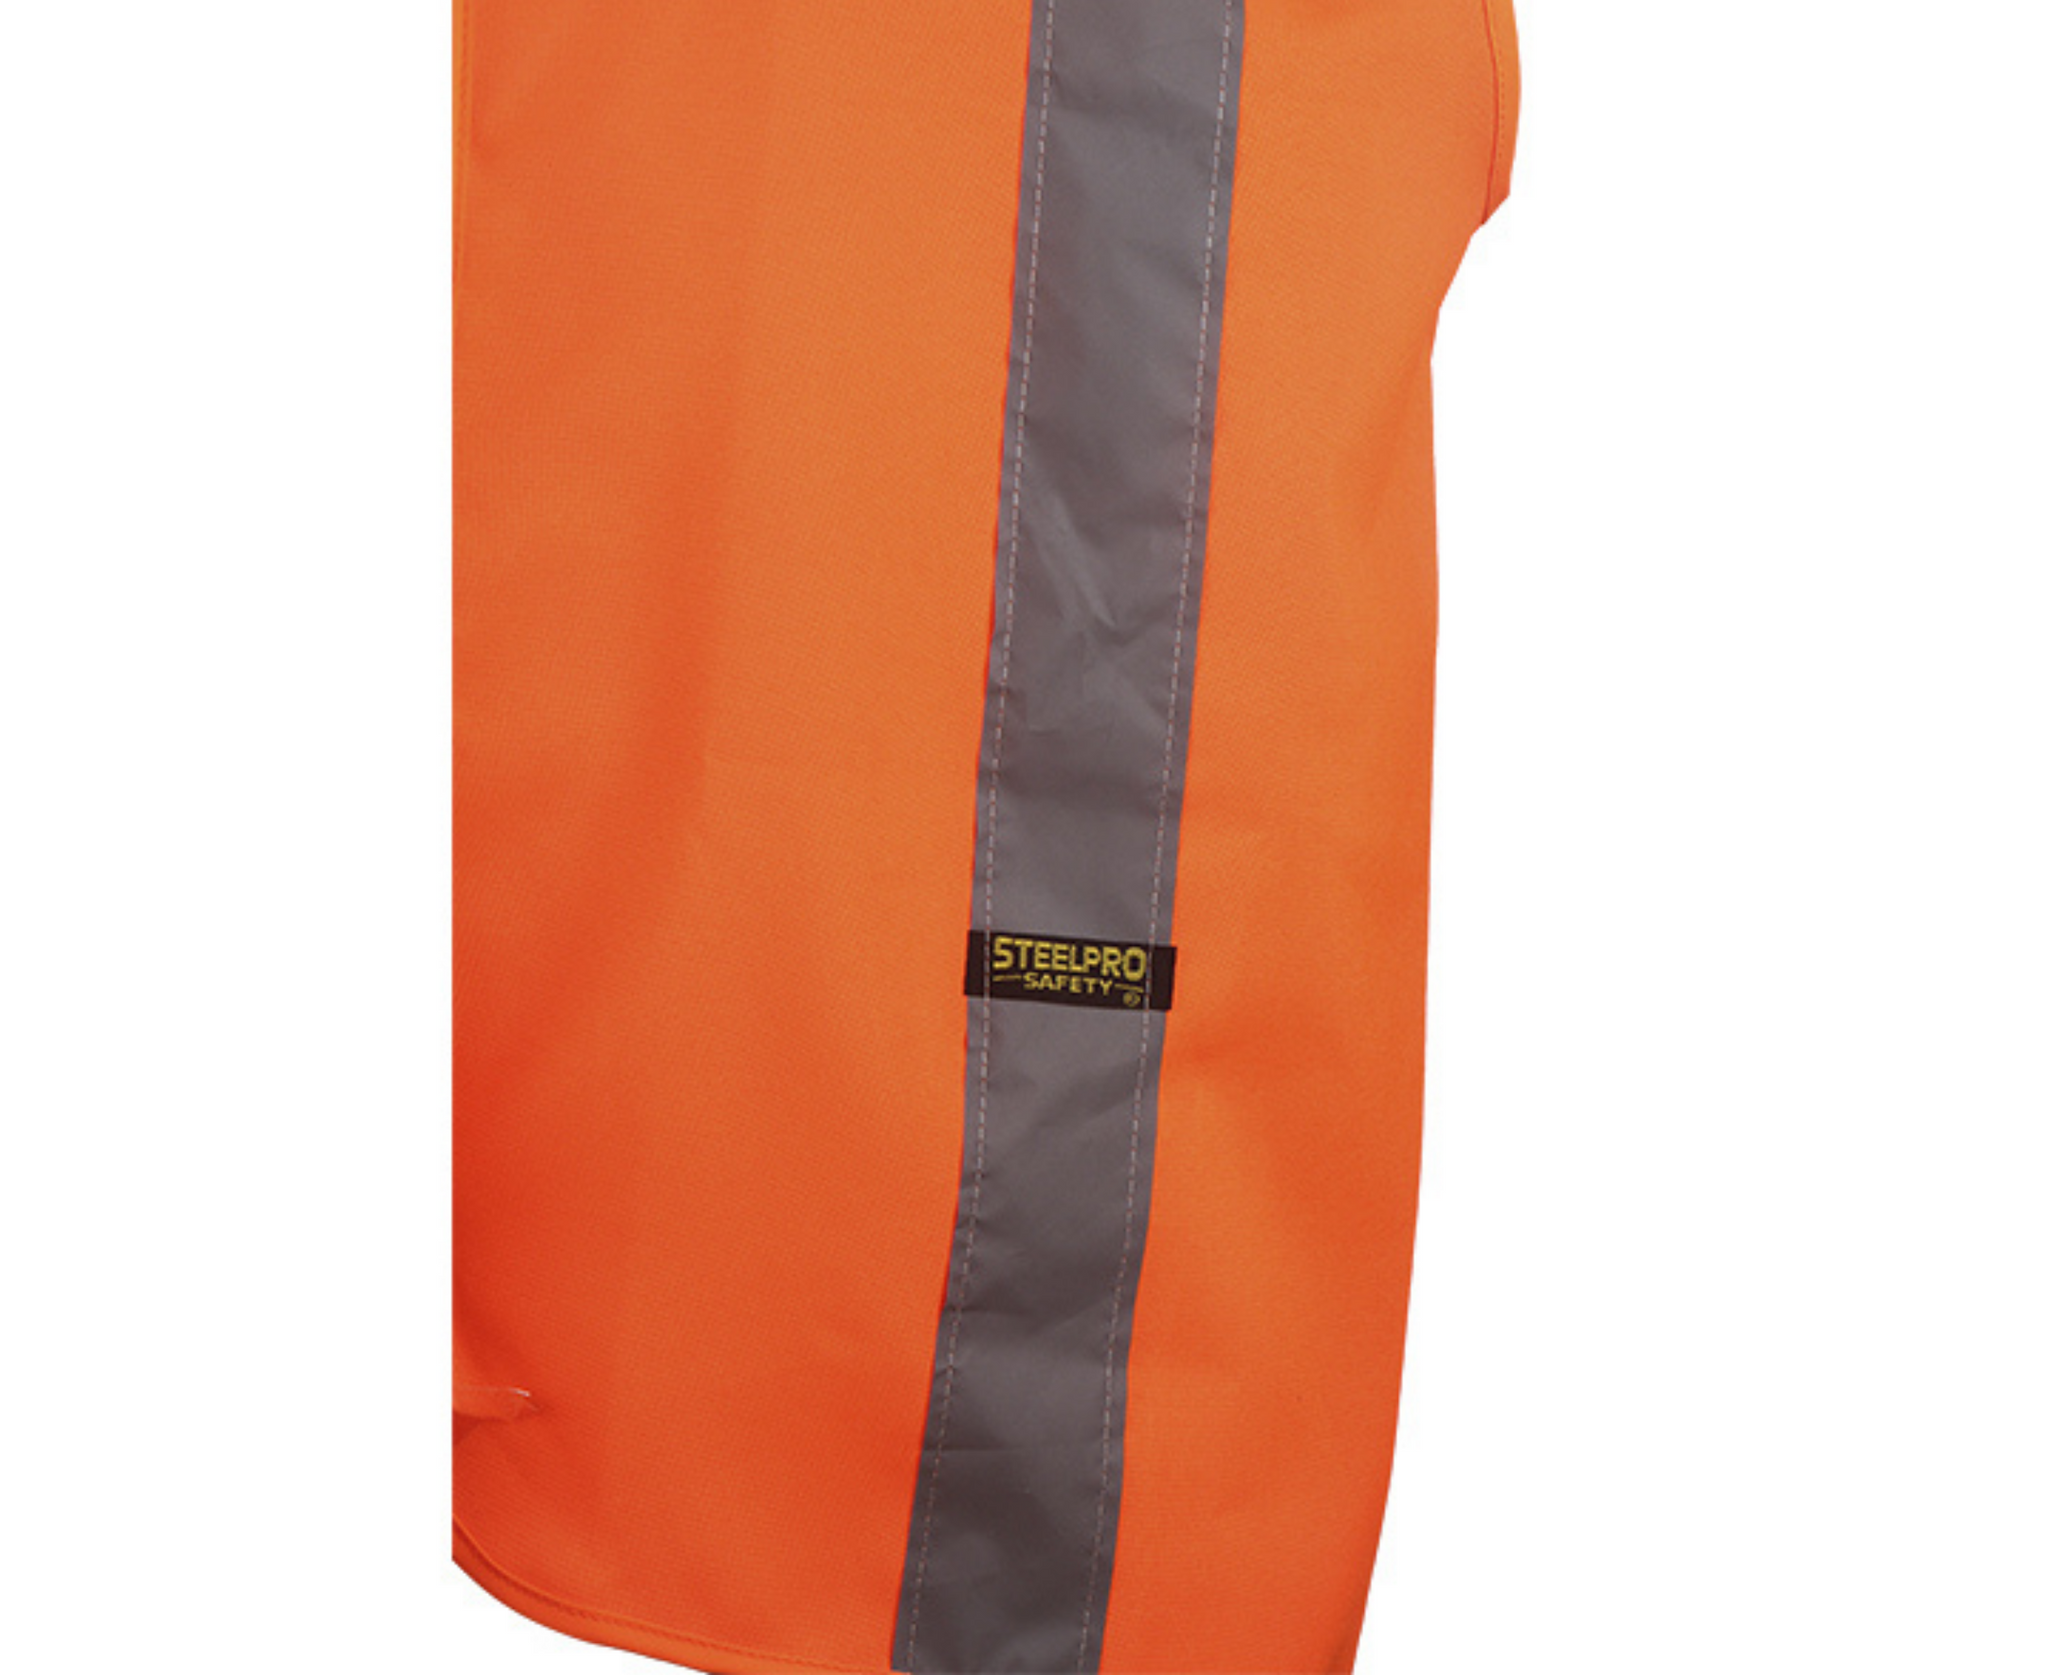 Coastal - Chaleco de seguridad reflectante, naranja neón, mediano - 18-50  lbs